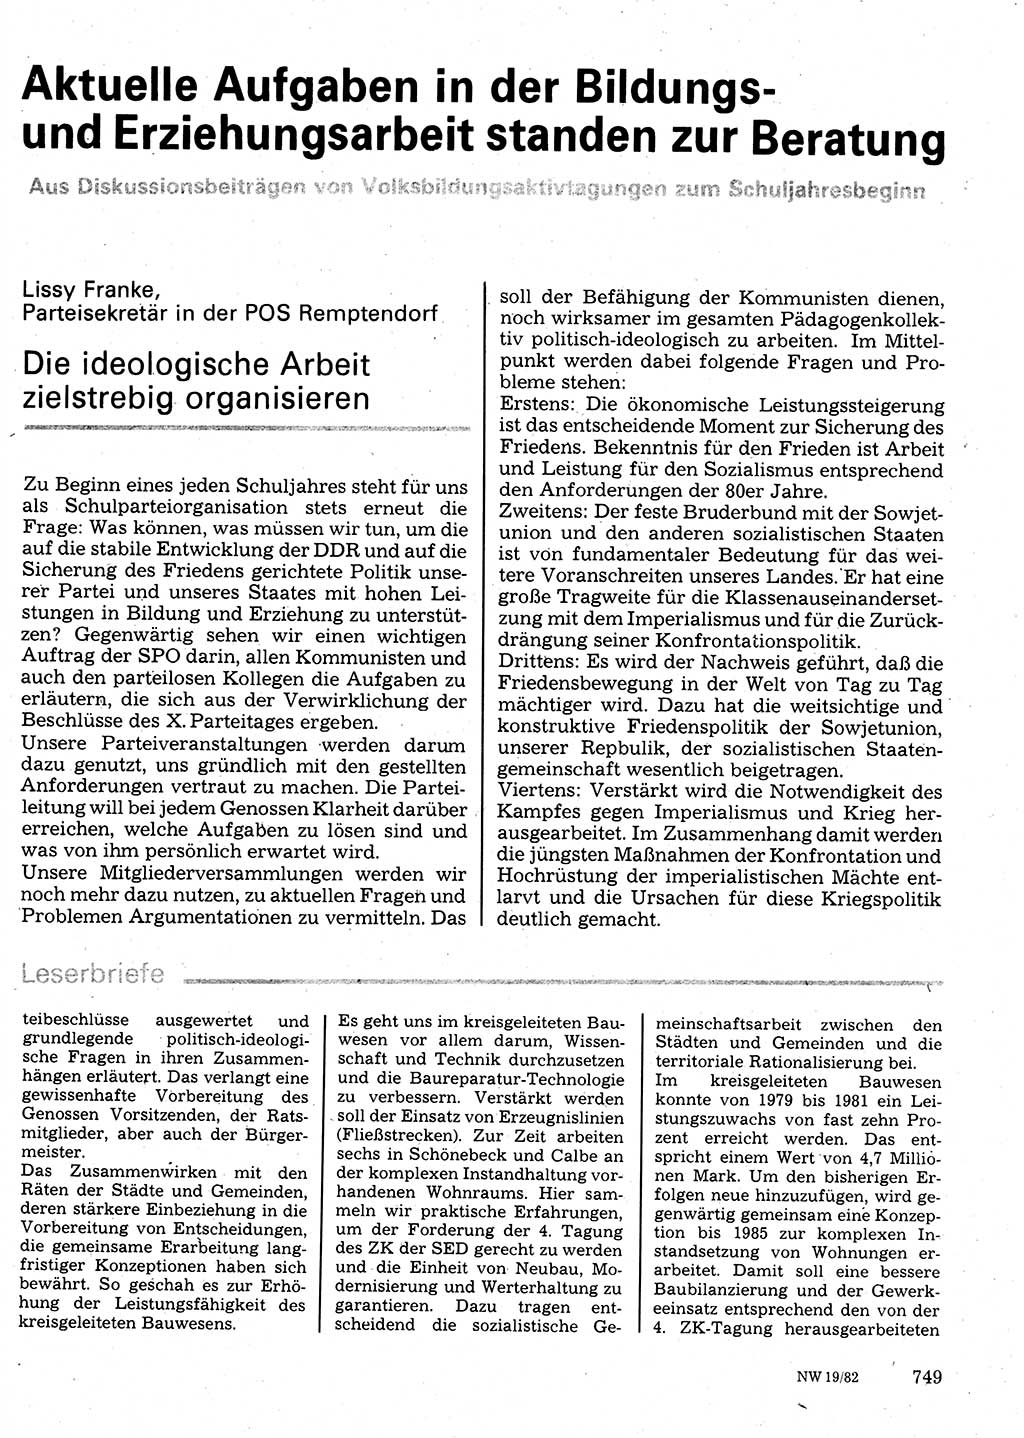 Neuer Weg (NW), Organ des Zentralkomitees (ZK) der SED (Sozialistische Einheitspartei Deutschlands) für Fragen des Parteilebens, 37. Jahrgang [Deutsche Demokratische Republik (DDR)] 1982, Seite 749 (NW ZK SED DDR 1982, S. 749)